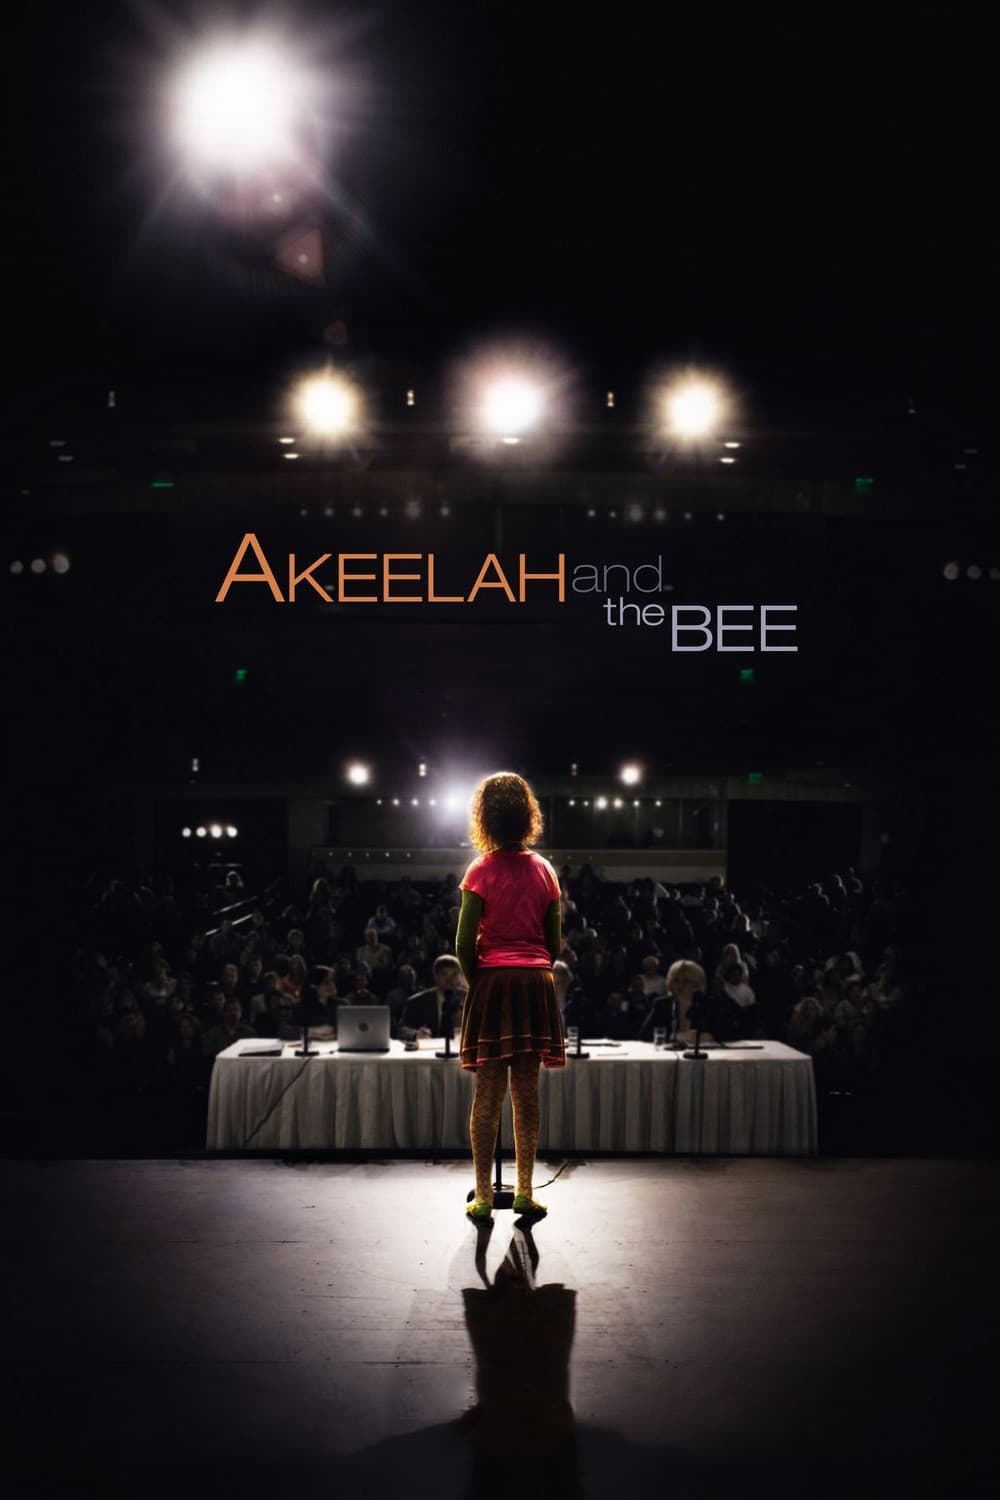 Akeelah est-il disponible sur Netflix ou autre ?